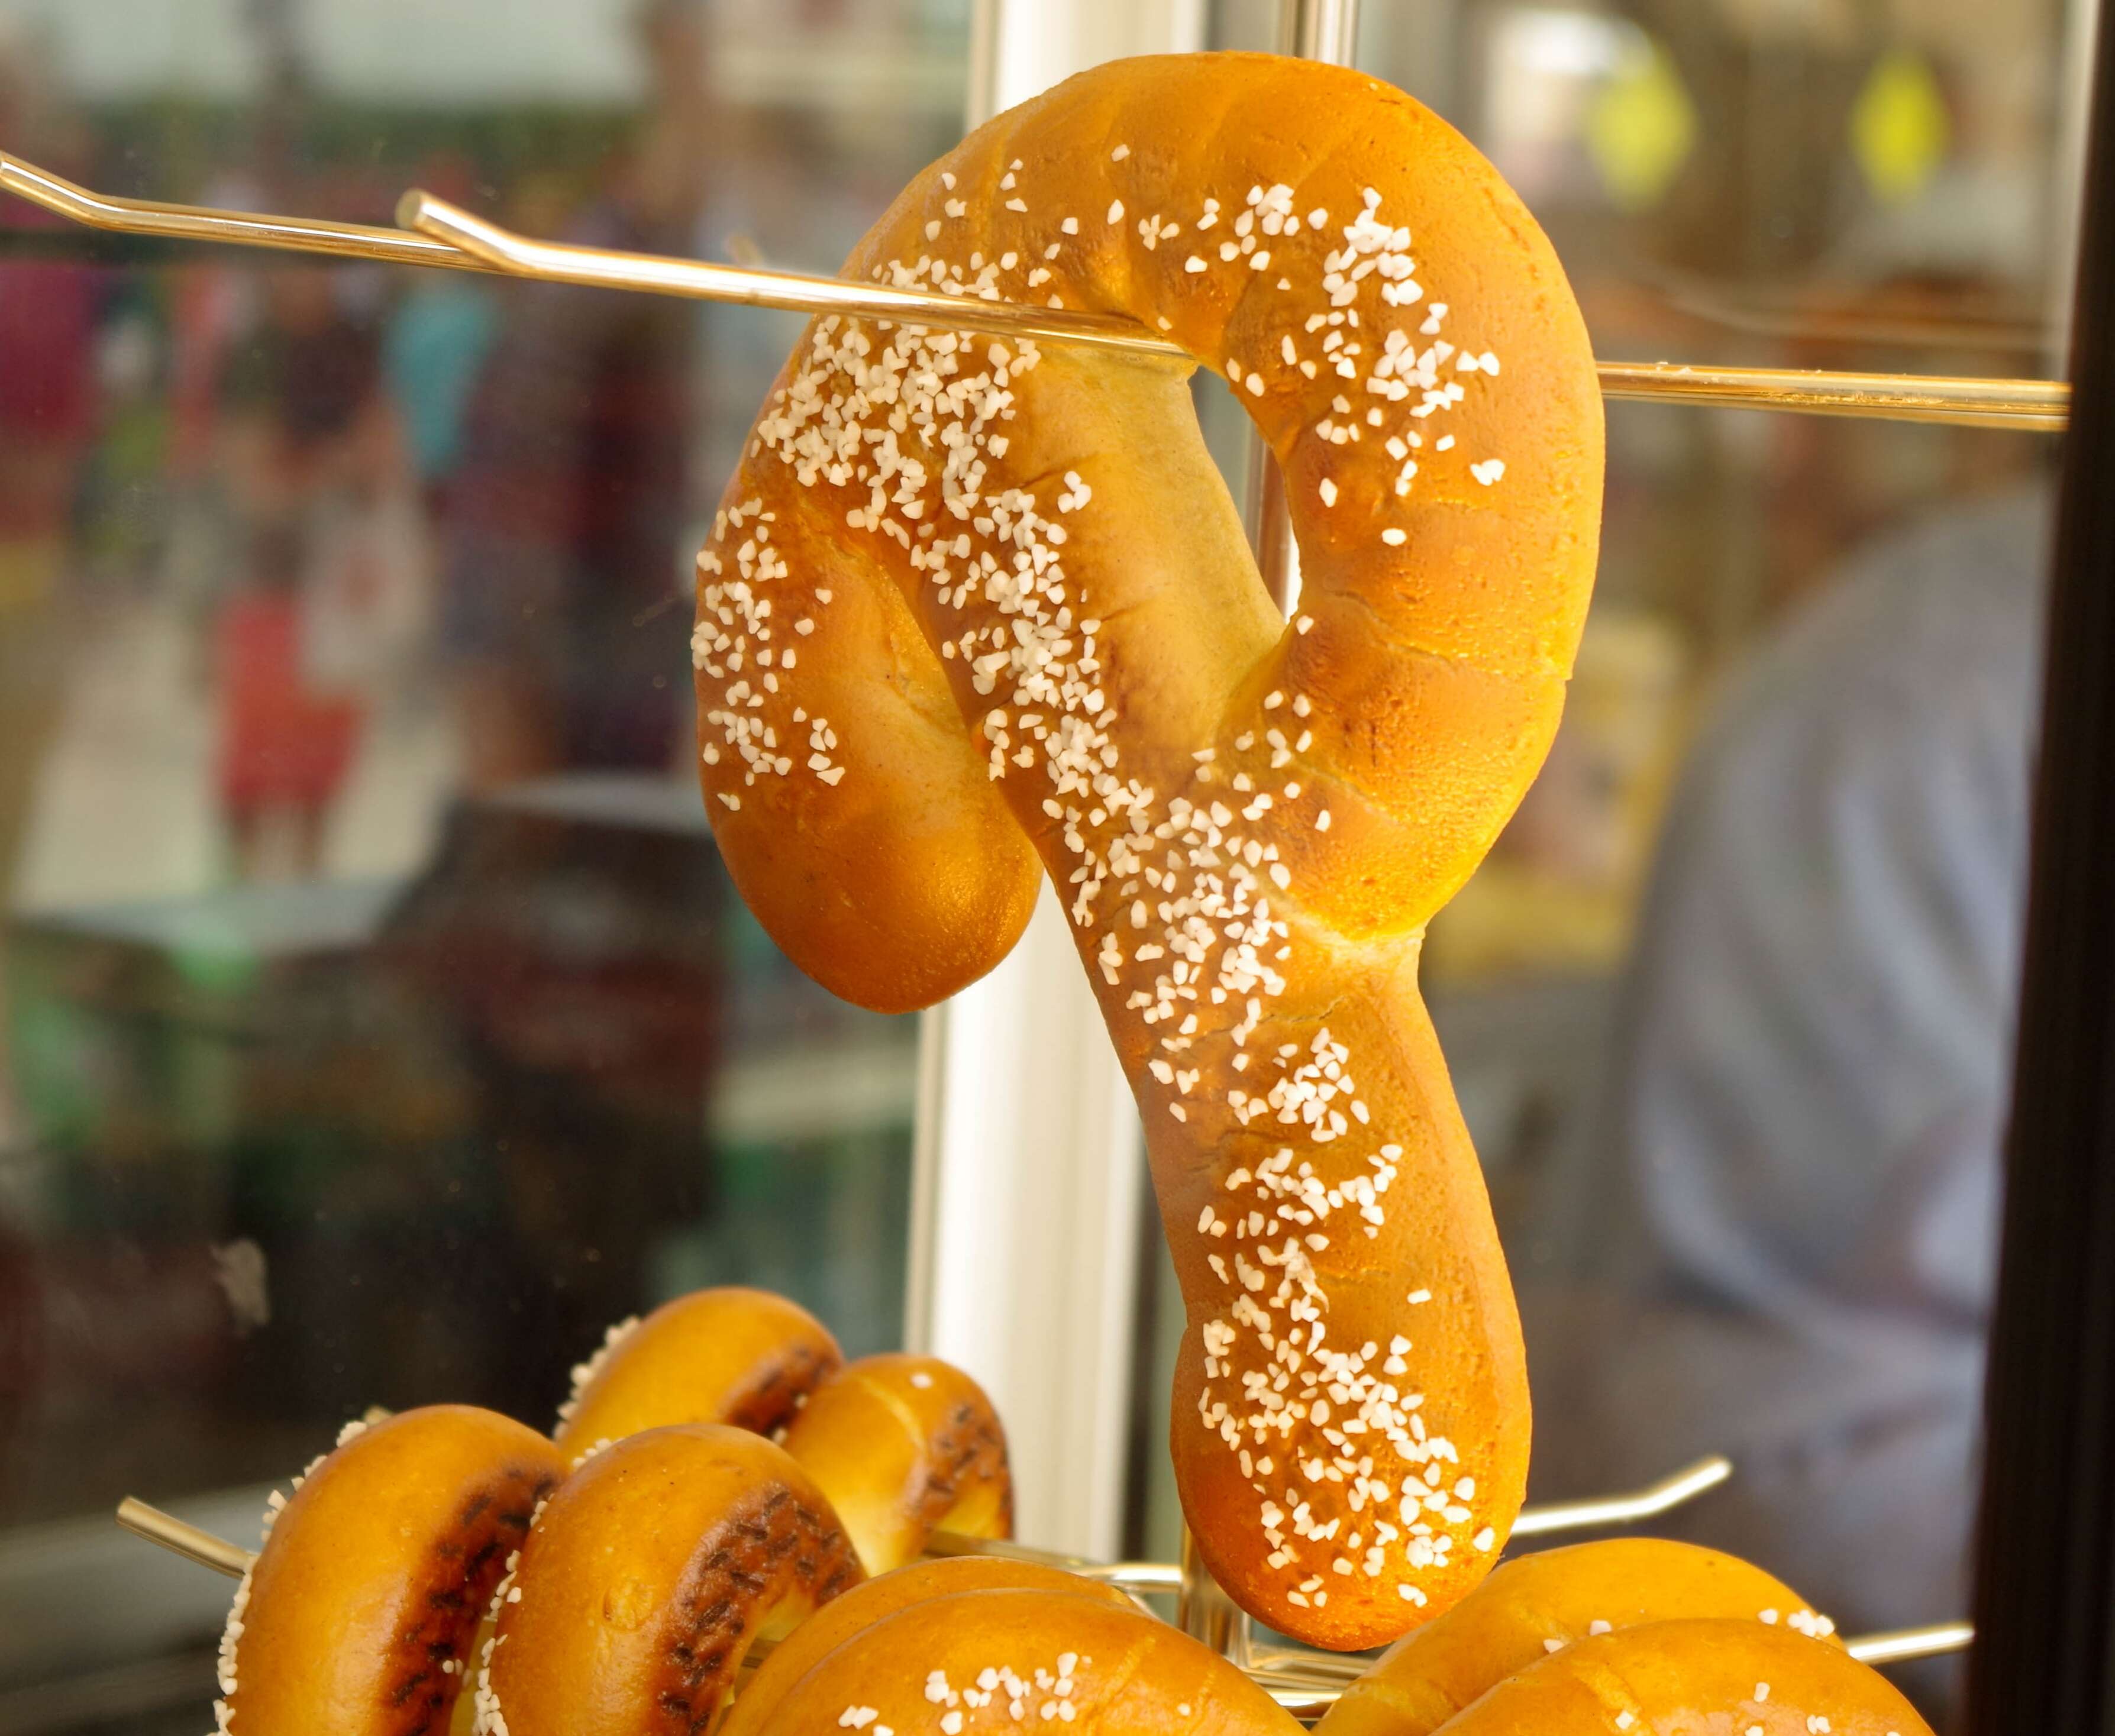 Philadelphia soft pretzels